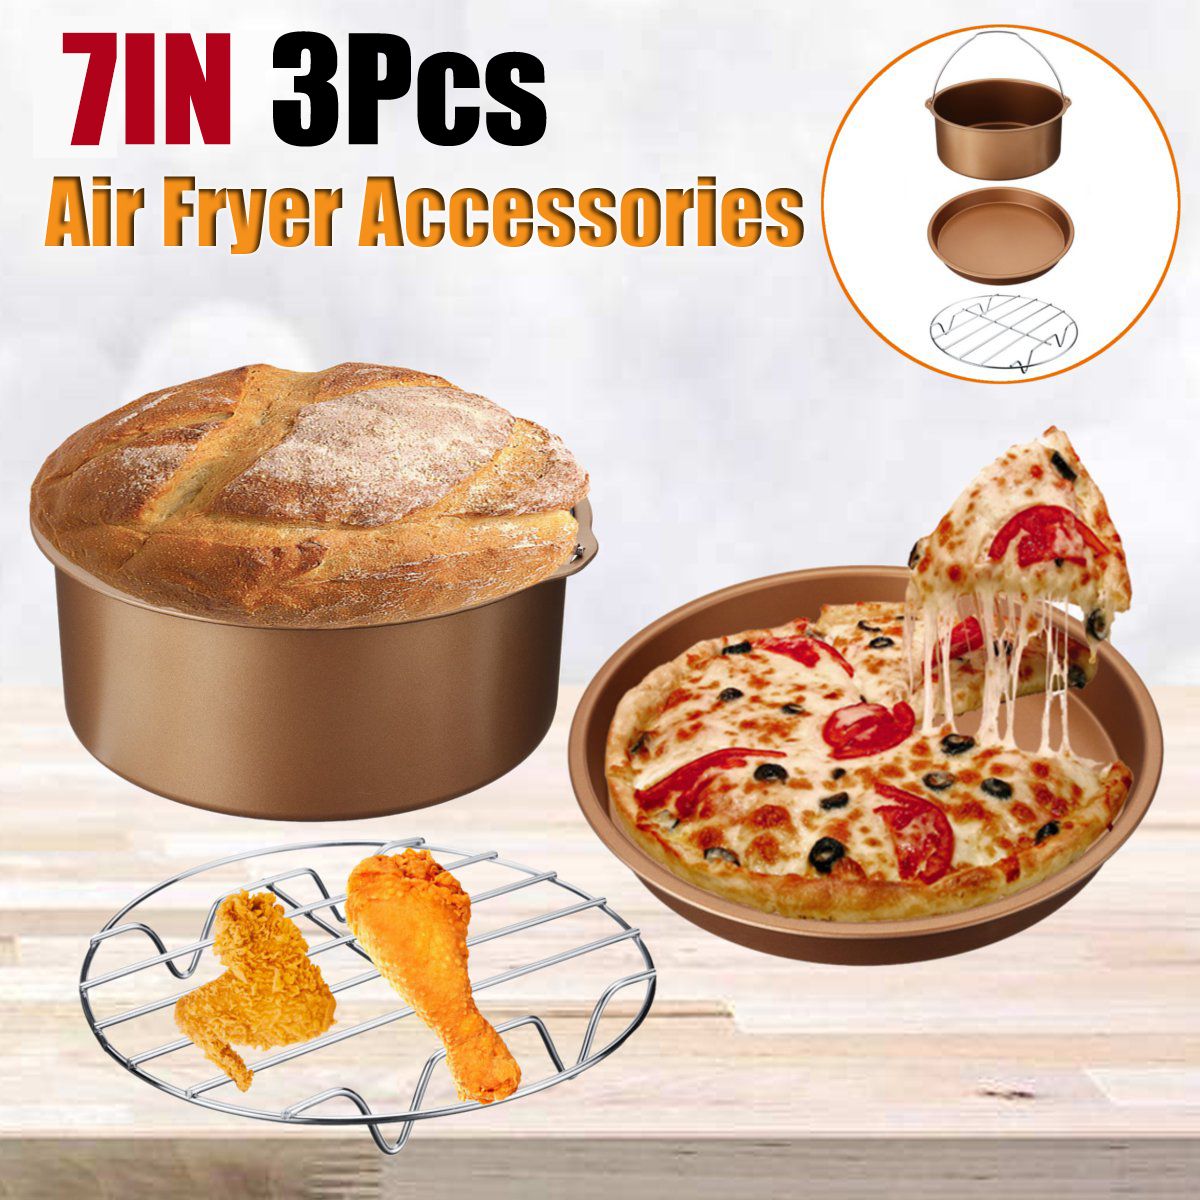 3Pcs-7quot-Air-Fryer-Accessories-Set-Chip-Baking-Basket-Pizza-Pan-Kitchen-32-58qt-1757807